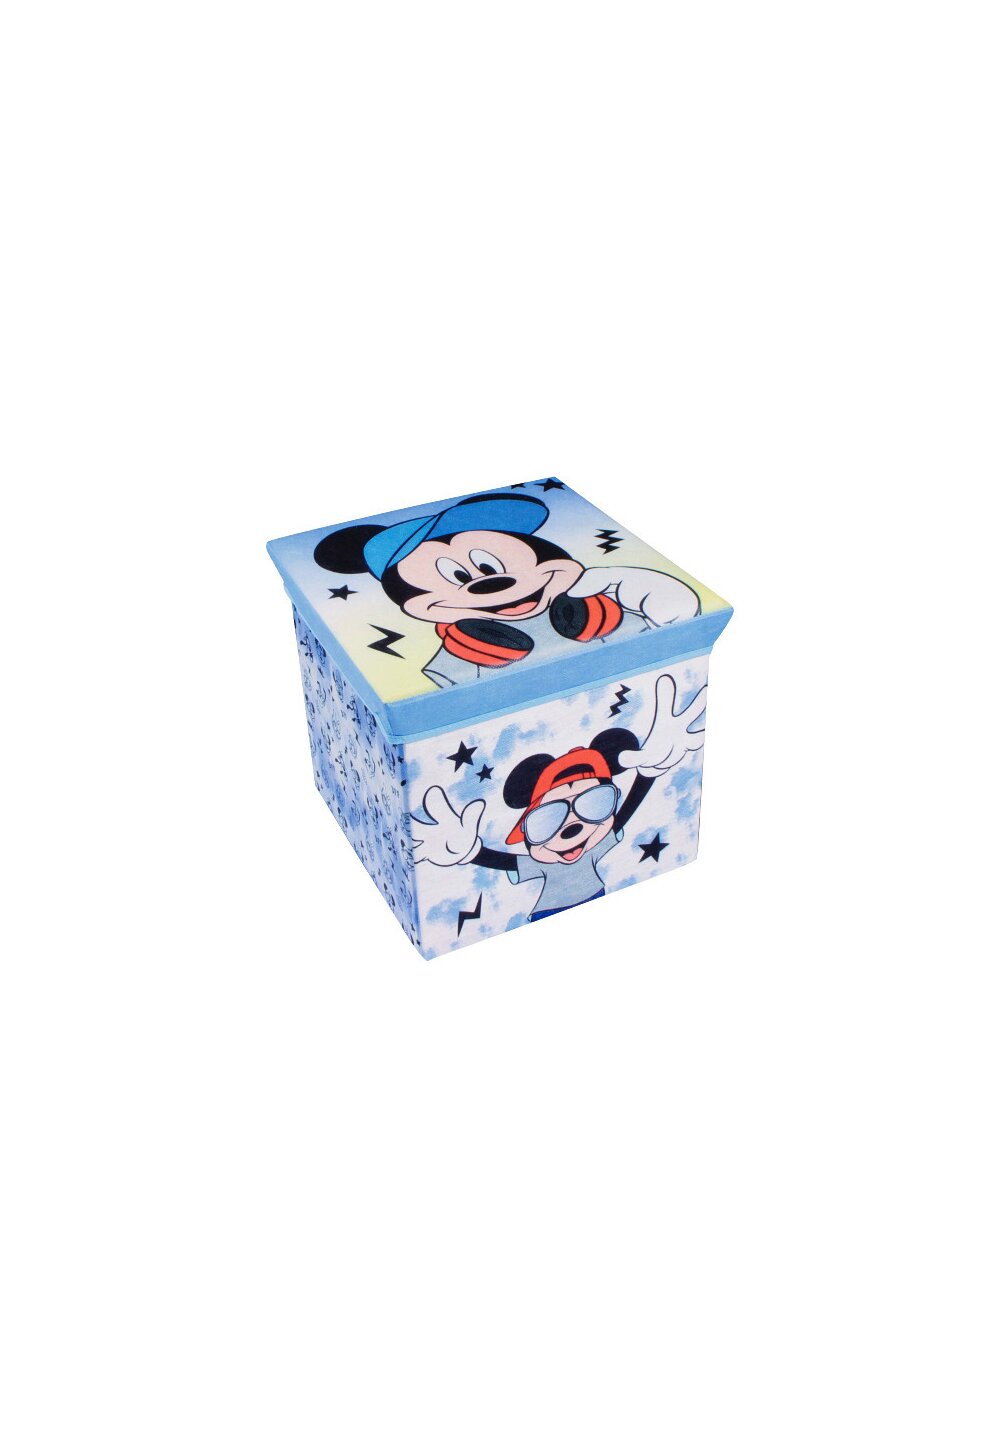 Cutie depozitare, Mickey Mouse, albastra cu stelute Accesorii